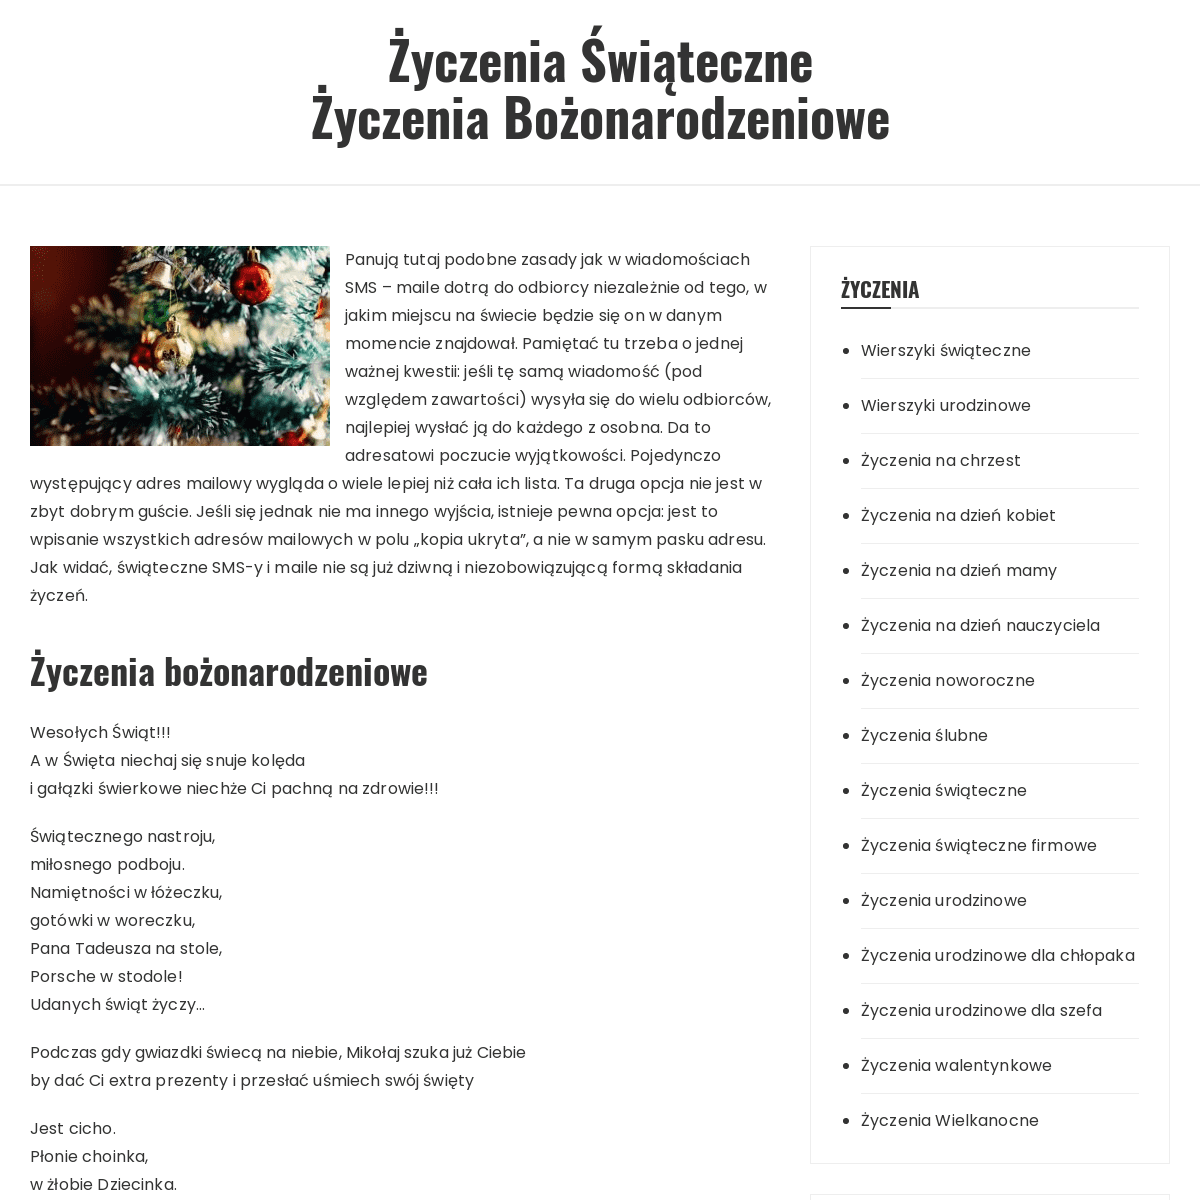 A complete backup of https://zyczenia-swiateczne.com